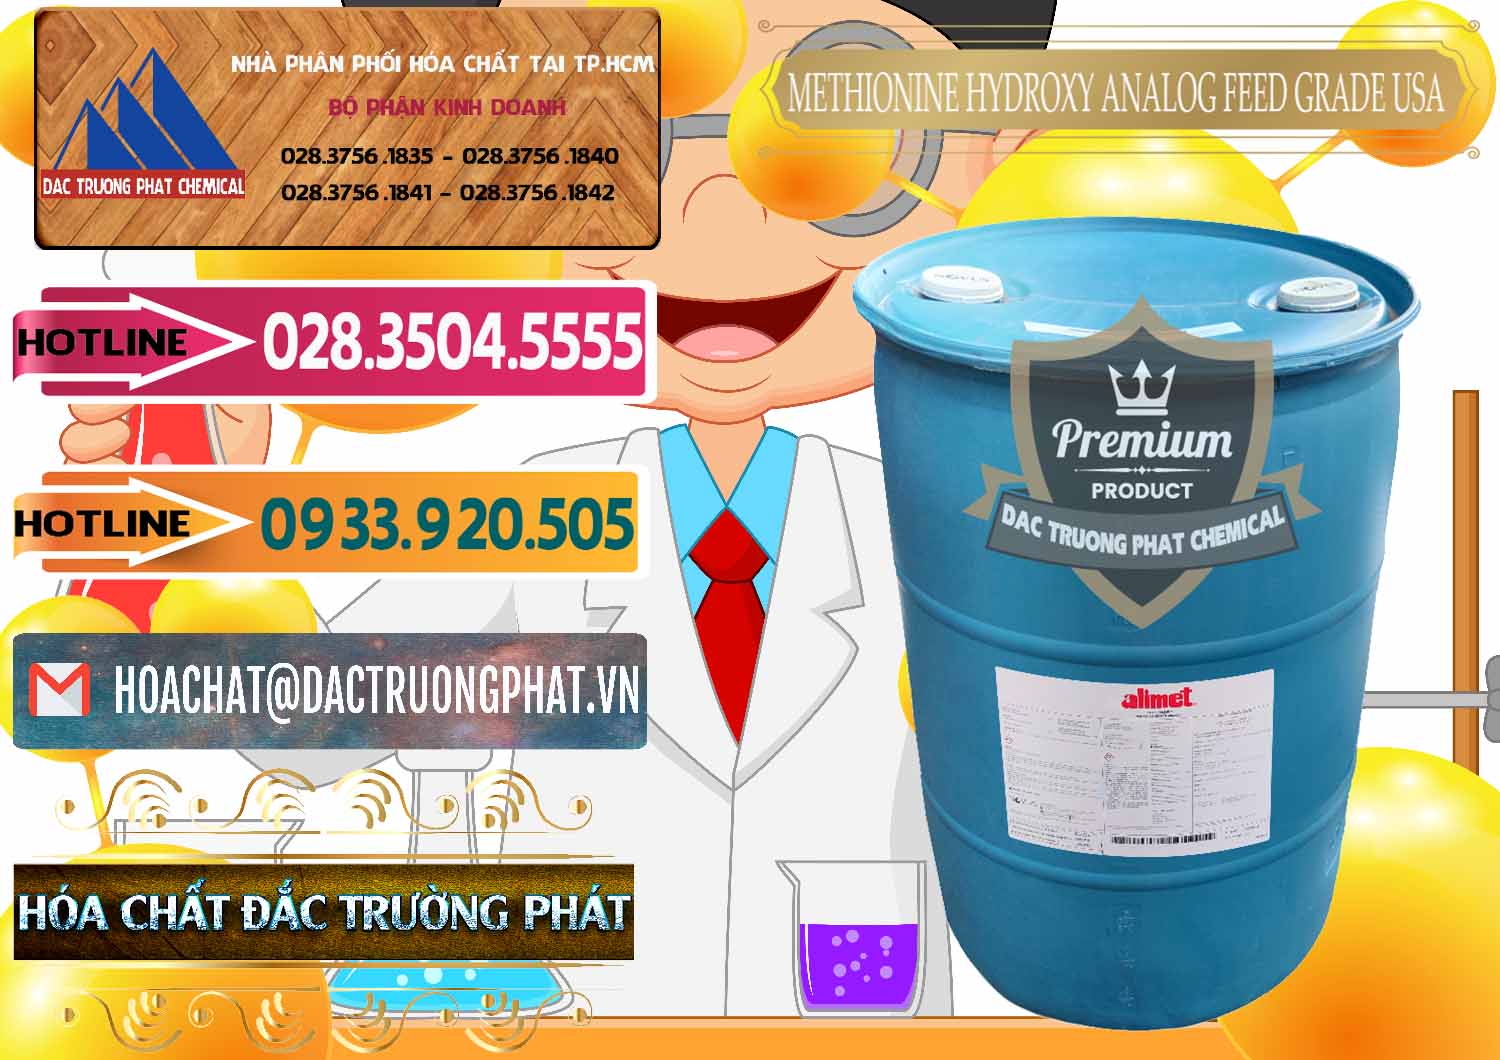 Cty bán và phân phối Methionine Nước - Dạng Lỏng Novus Alimet Mỹ USA - 0316 - Công ty chuyên kinh doanh _ phân phối hóa chất tại TP.HCM - dactruongphat.vn